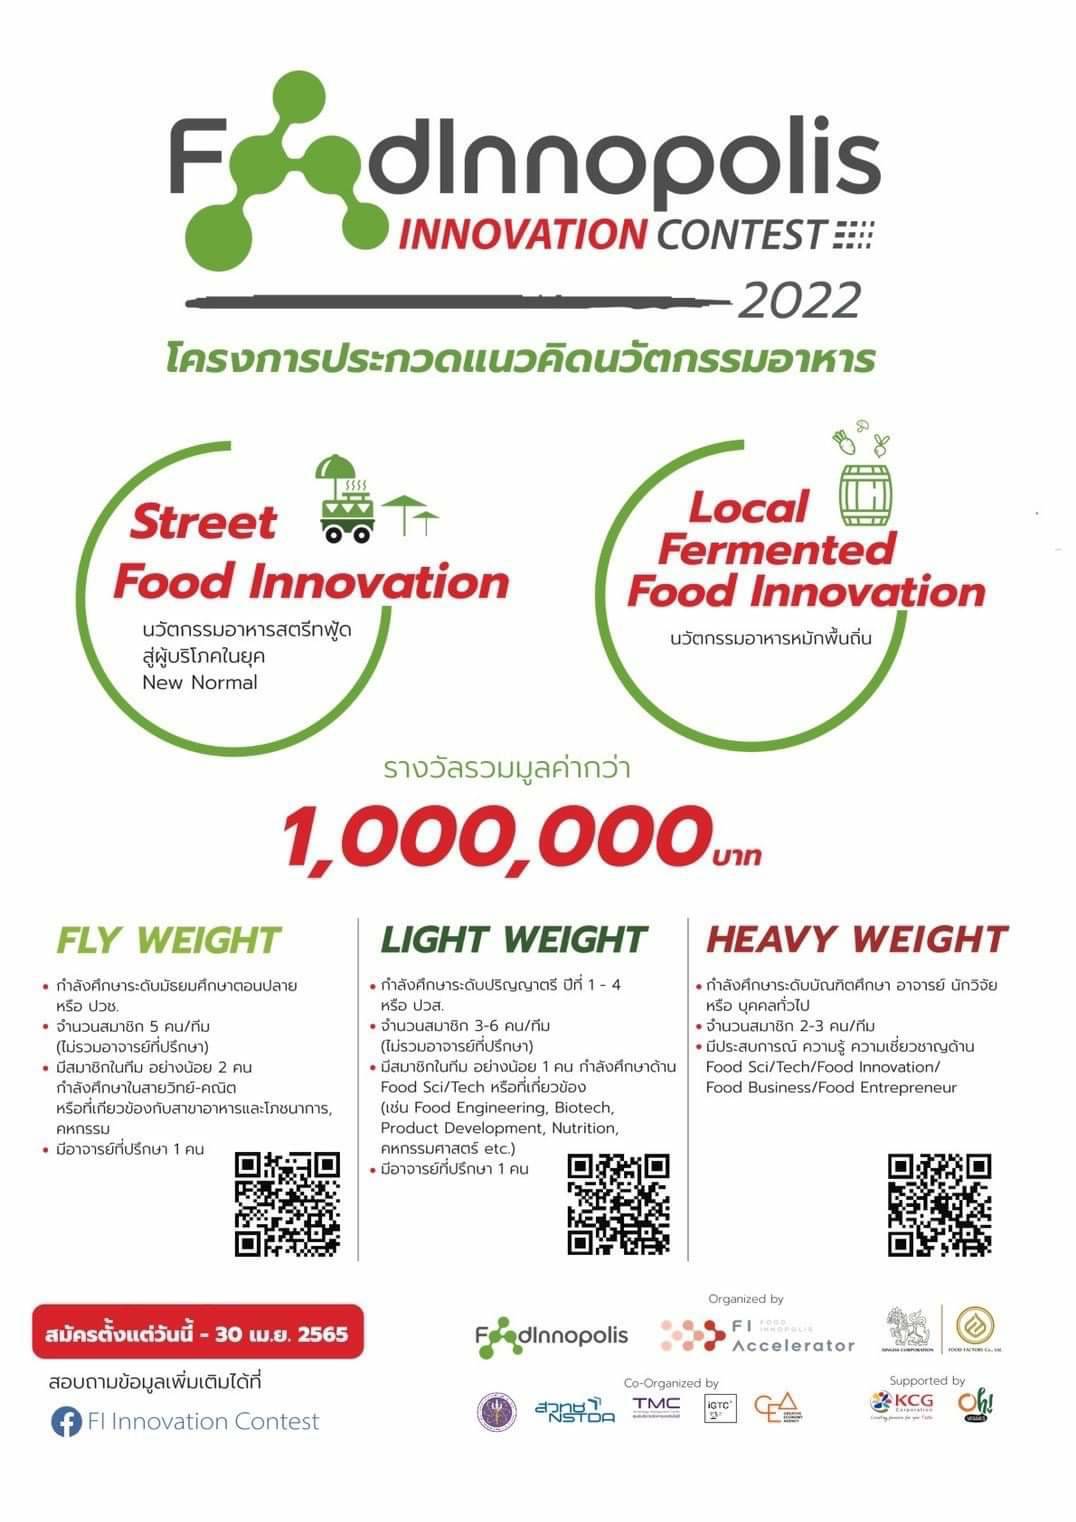 โครงการประกวดแนวคิดนวัตกรรมอาหาร FoodInnopolis Innovation Contest 2022